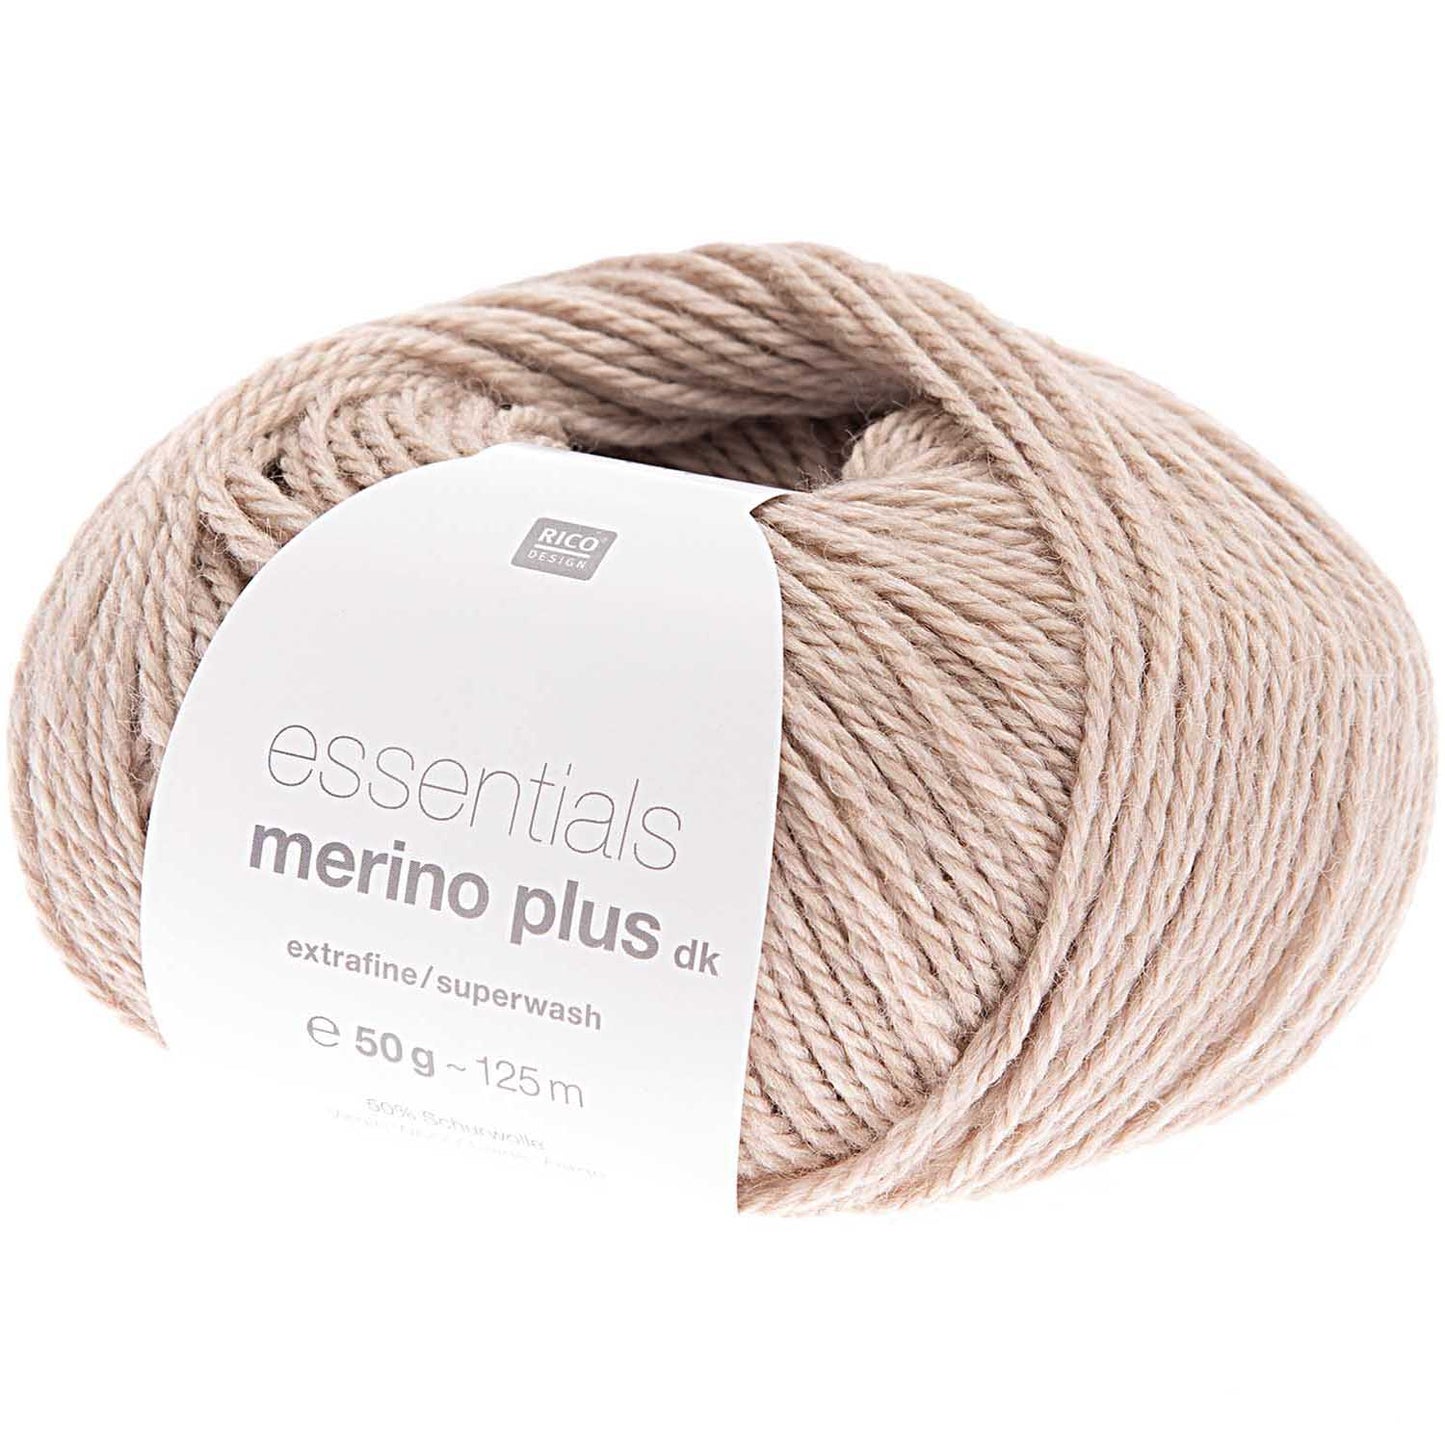 Essentials Merino Plus dk - natur